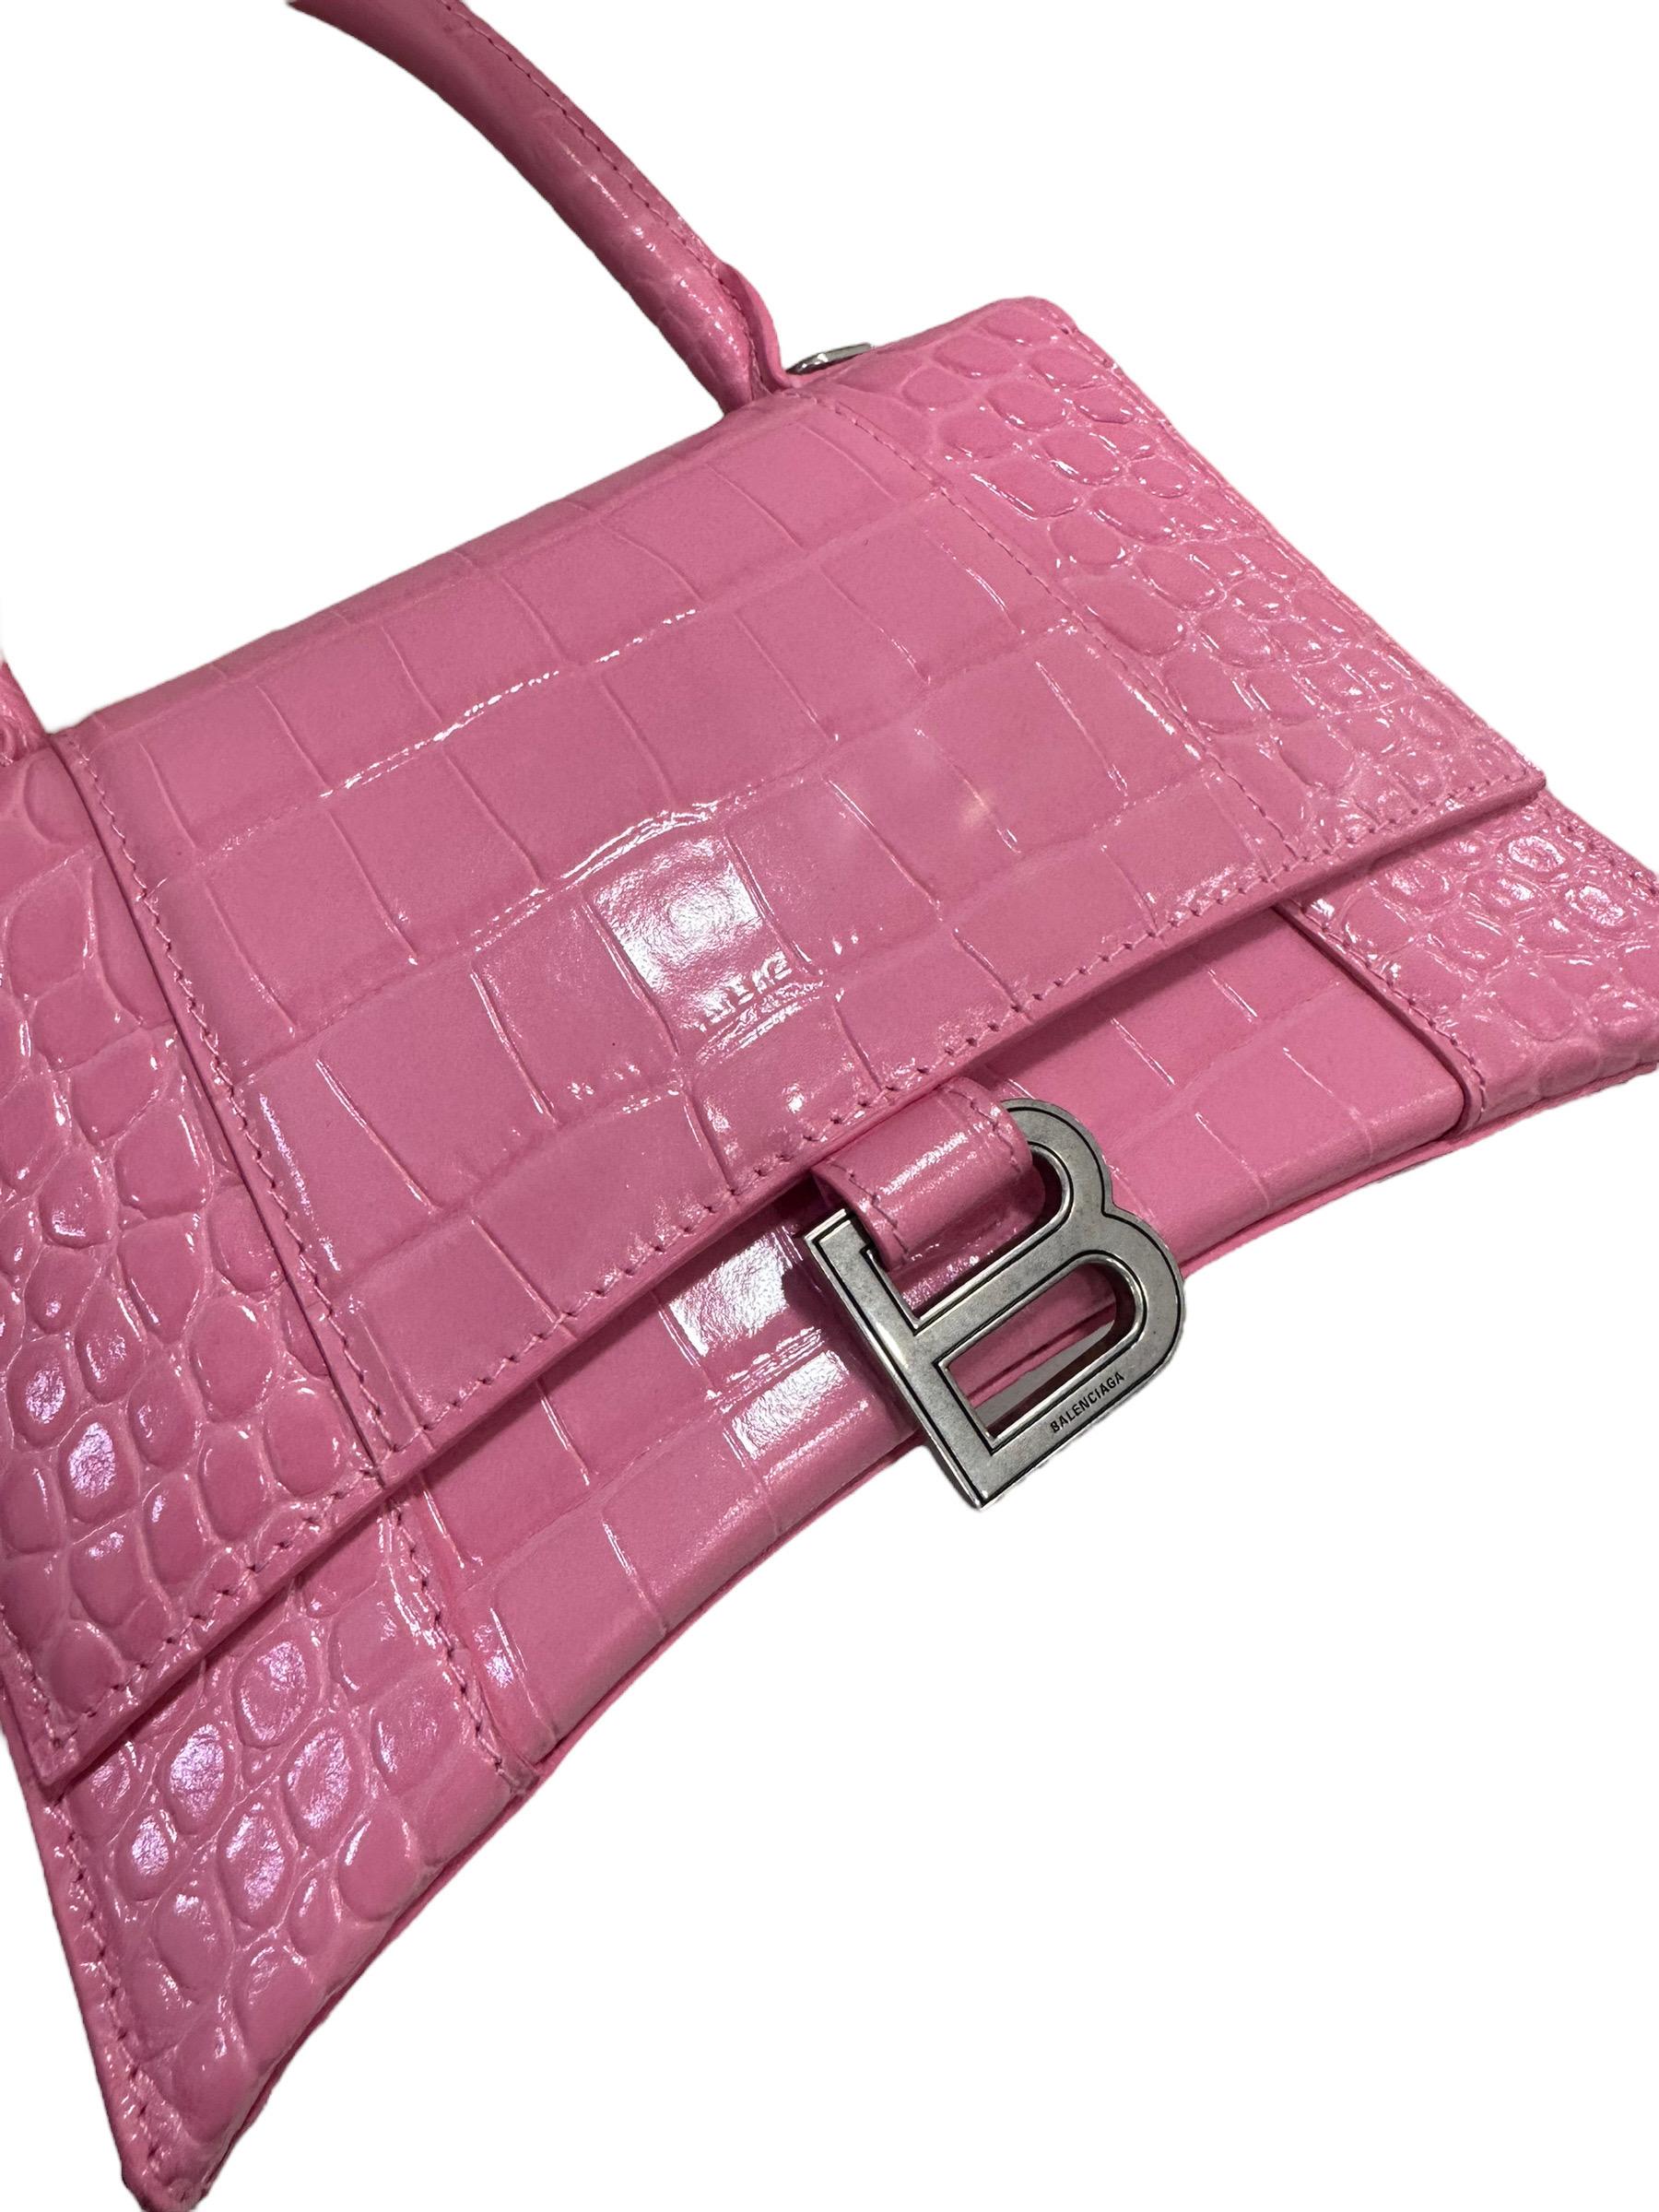 Borsa firmata Balenciaga, modello Hourglass, misura piccola, realizzata in pelle stampa effetto cocco rosa con hardware argentati. Munita di un manico rigido centrale per portata a mano e di una tracolla in pelle regolabile e rimovibile per